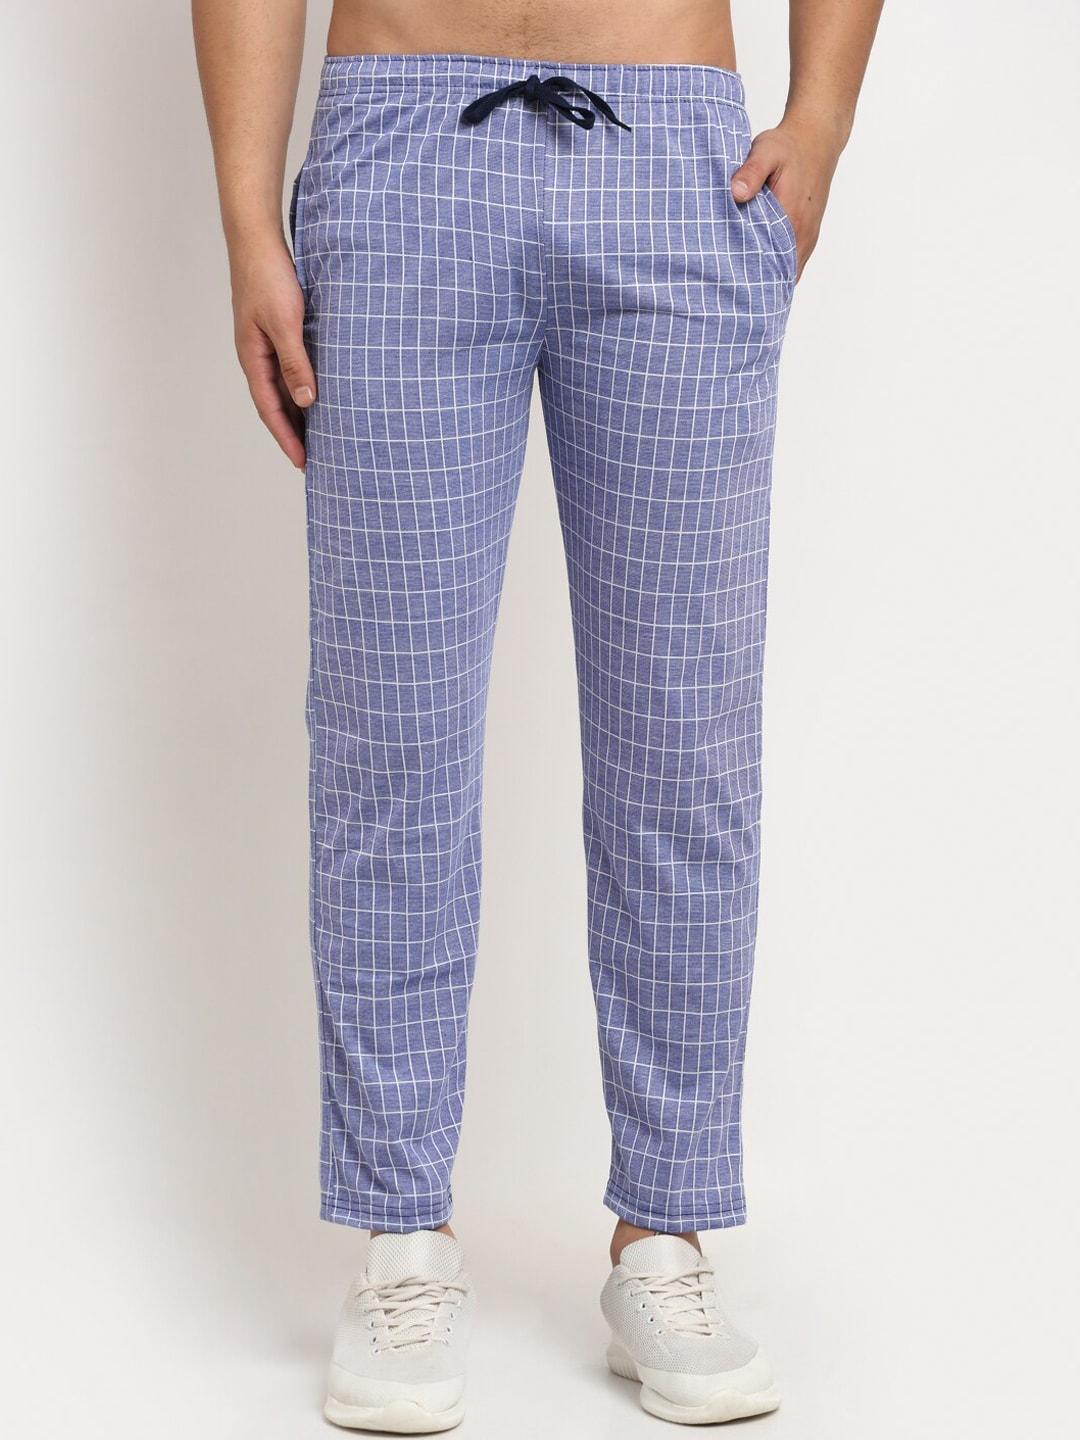 vimal-jonney-men-blue-&-white-checked-track-pants